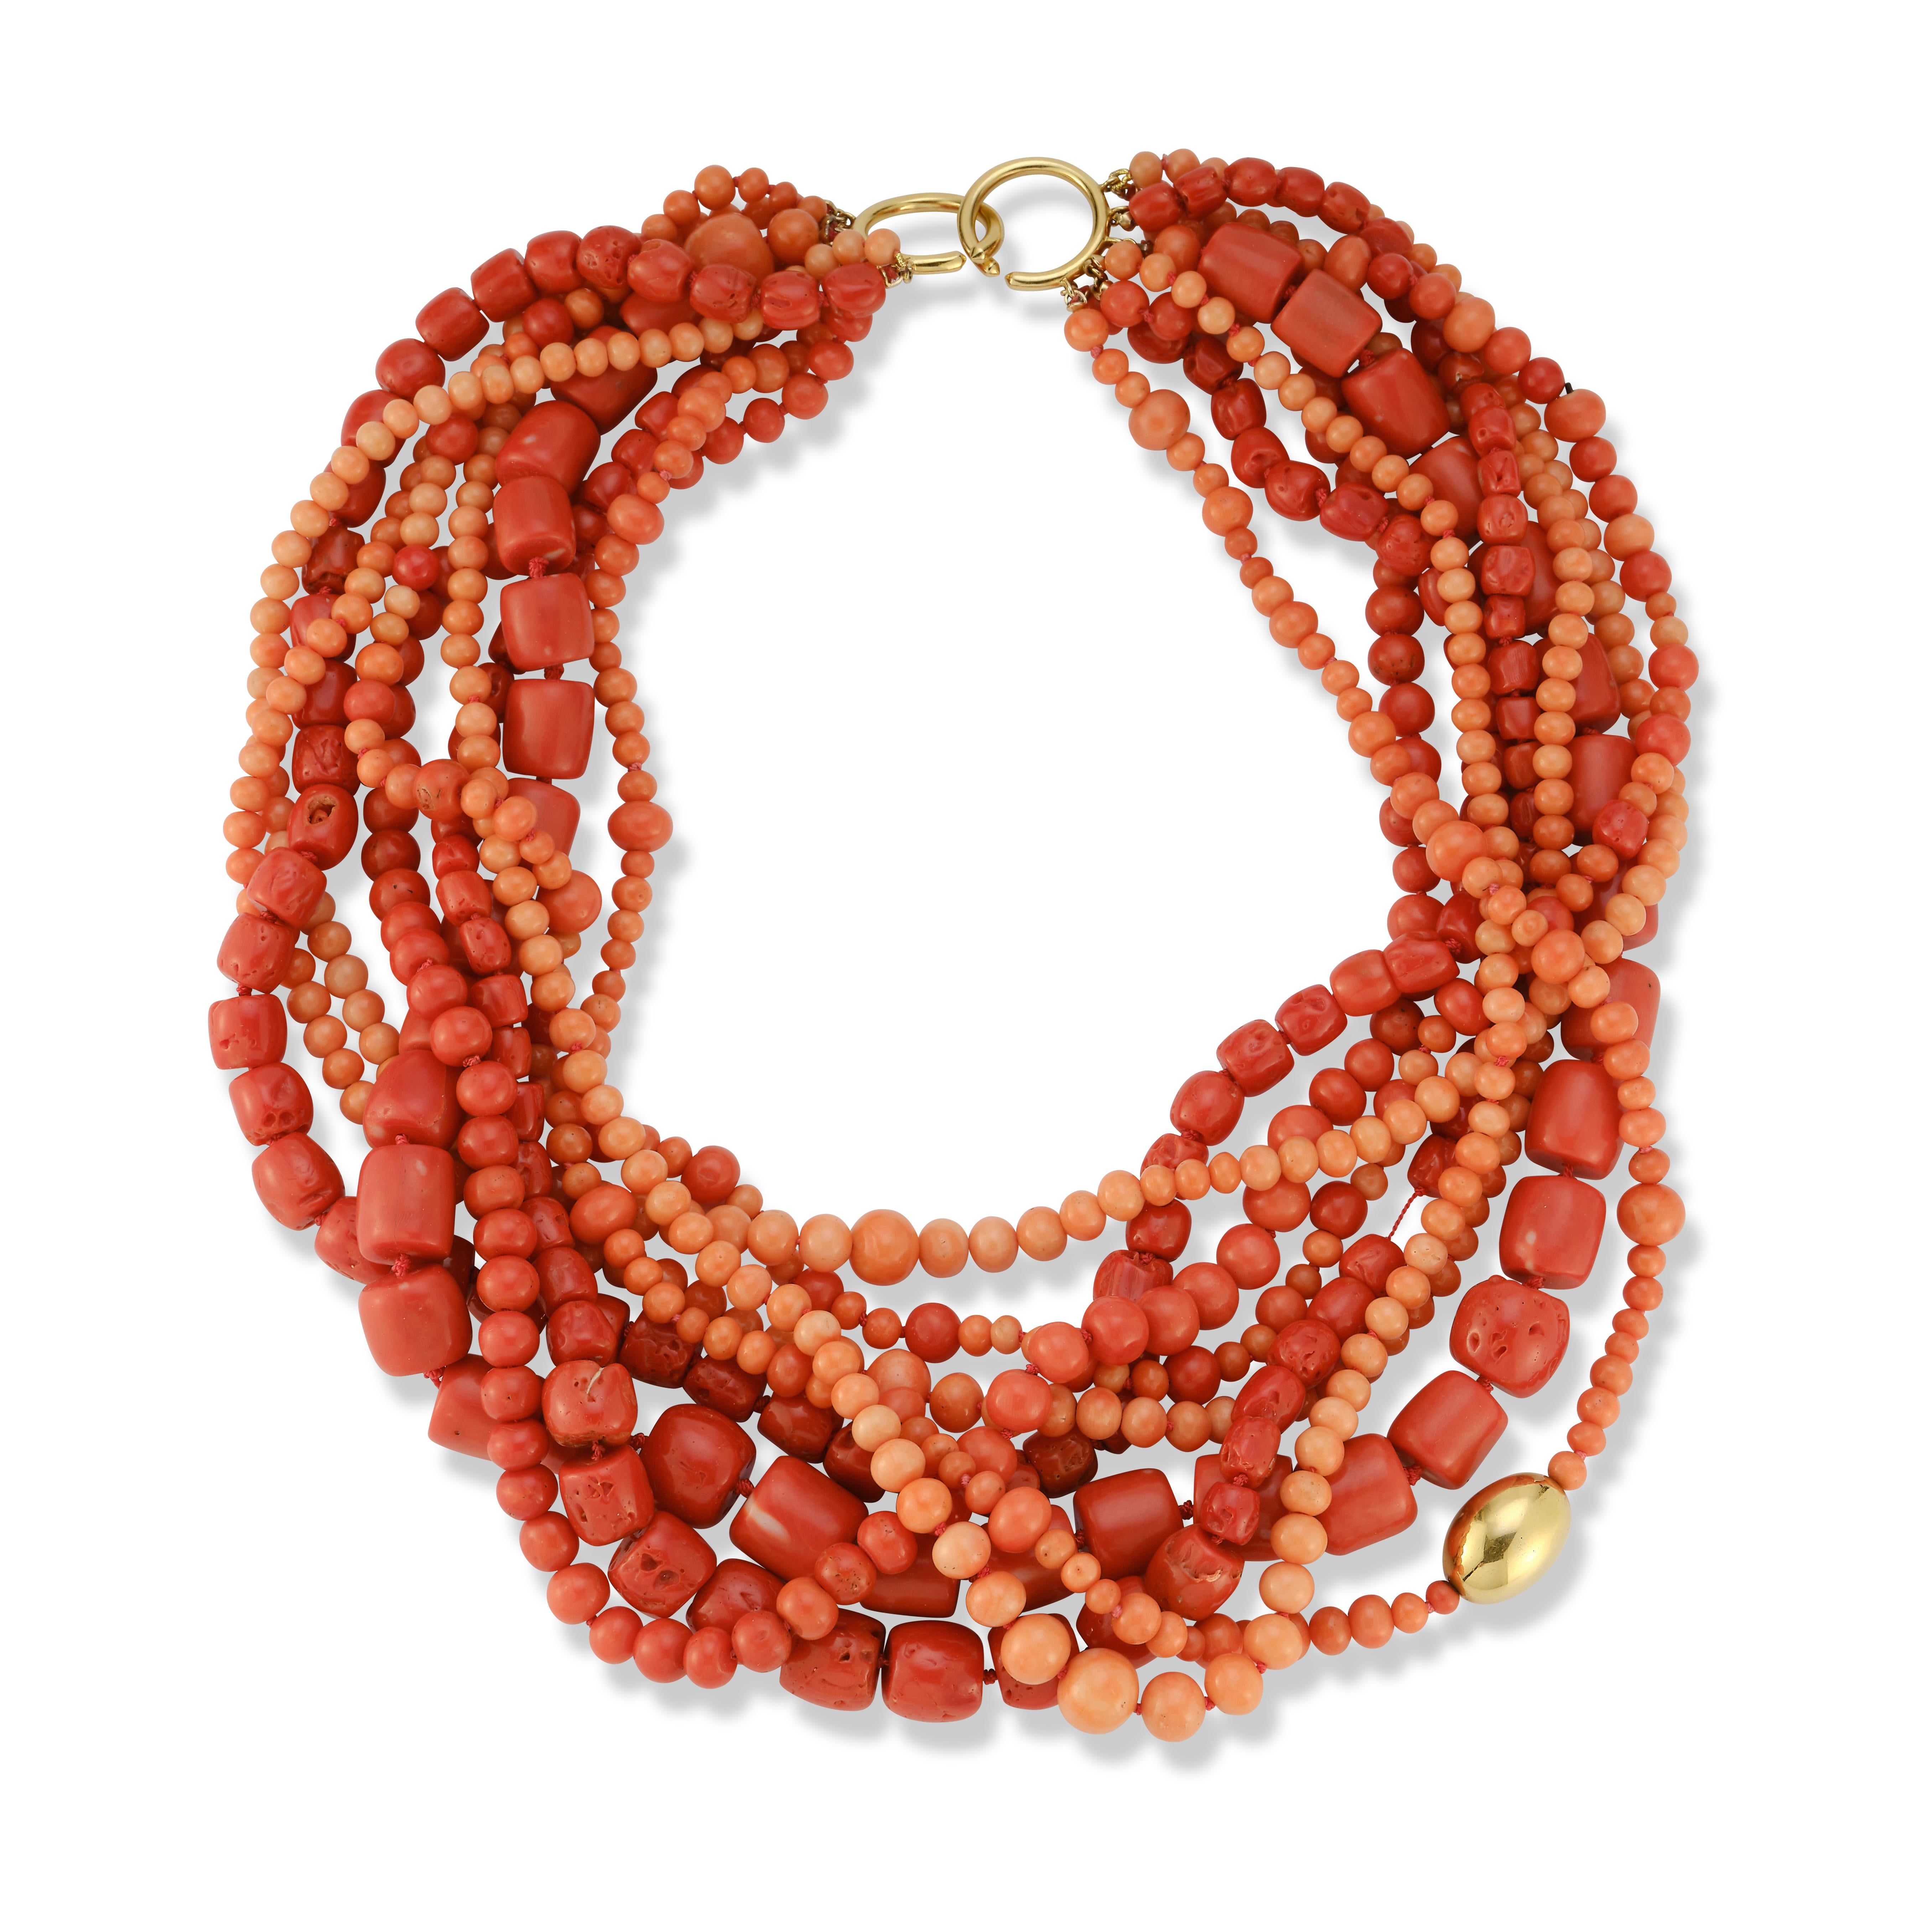 Paloma Picasso for Tiffany & Co. Collier de perles de corail multibrins
 
9 rangs de perles de corail attachés par un fermoir en or 18 carats en forme de torsade.

Signé : Paloma Picasso, Tiffany & Co.
Estampillé : 1983, 18k

Longueur : 21